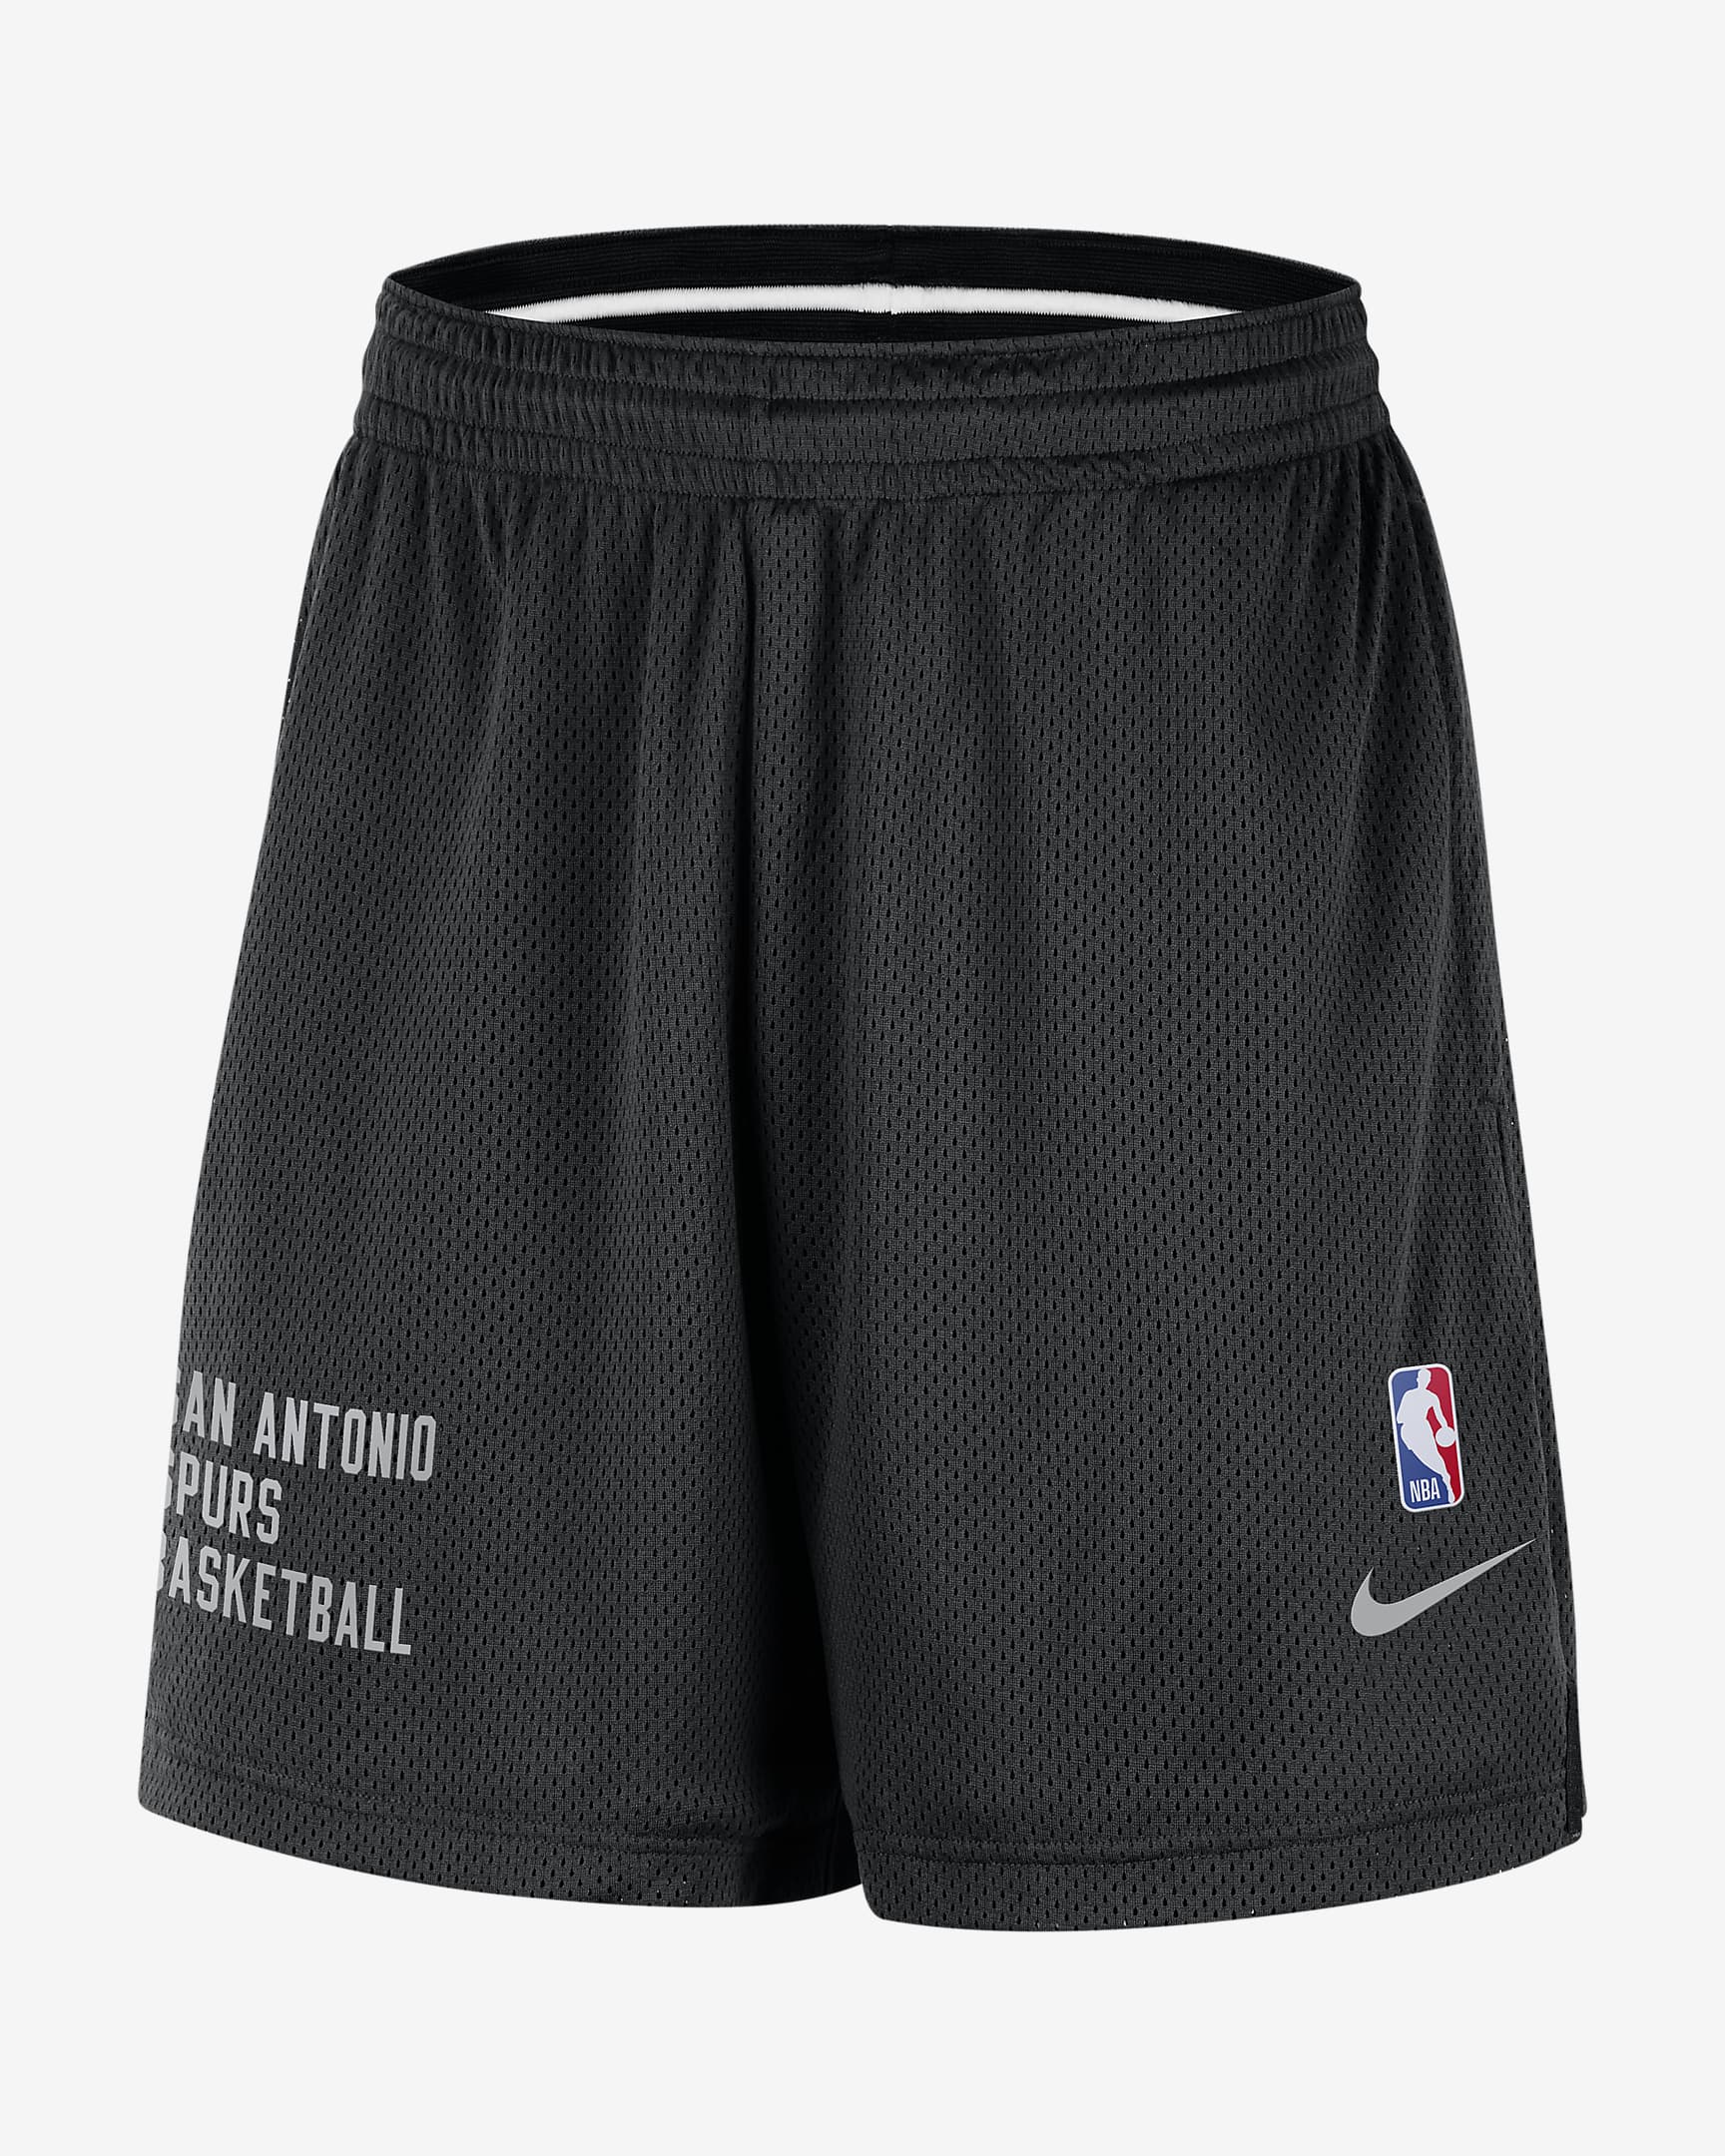 San Antonio Spurs Men's Nike NBA Mesh Shorts. Nike.com